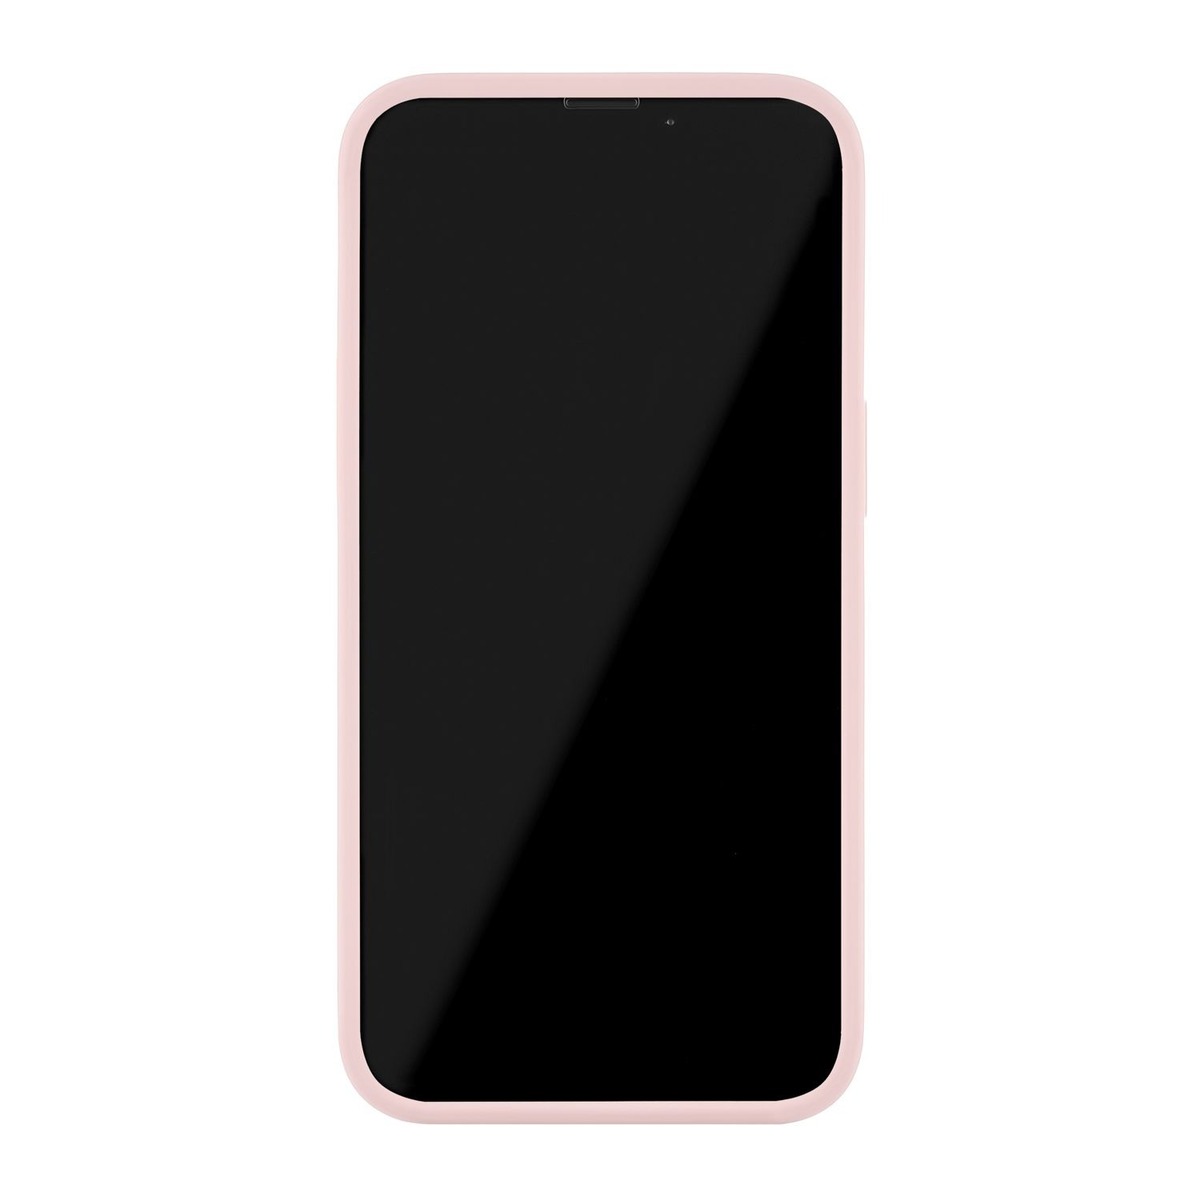 Чехол-накладка uBear Touch Mag Case для смартфона Apple iPhone 13 Mini (Цвет: Rose) 